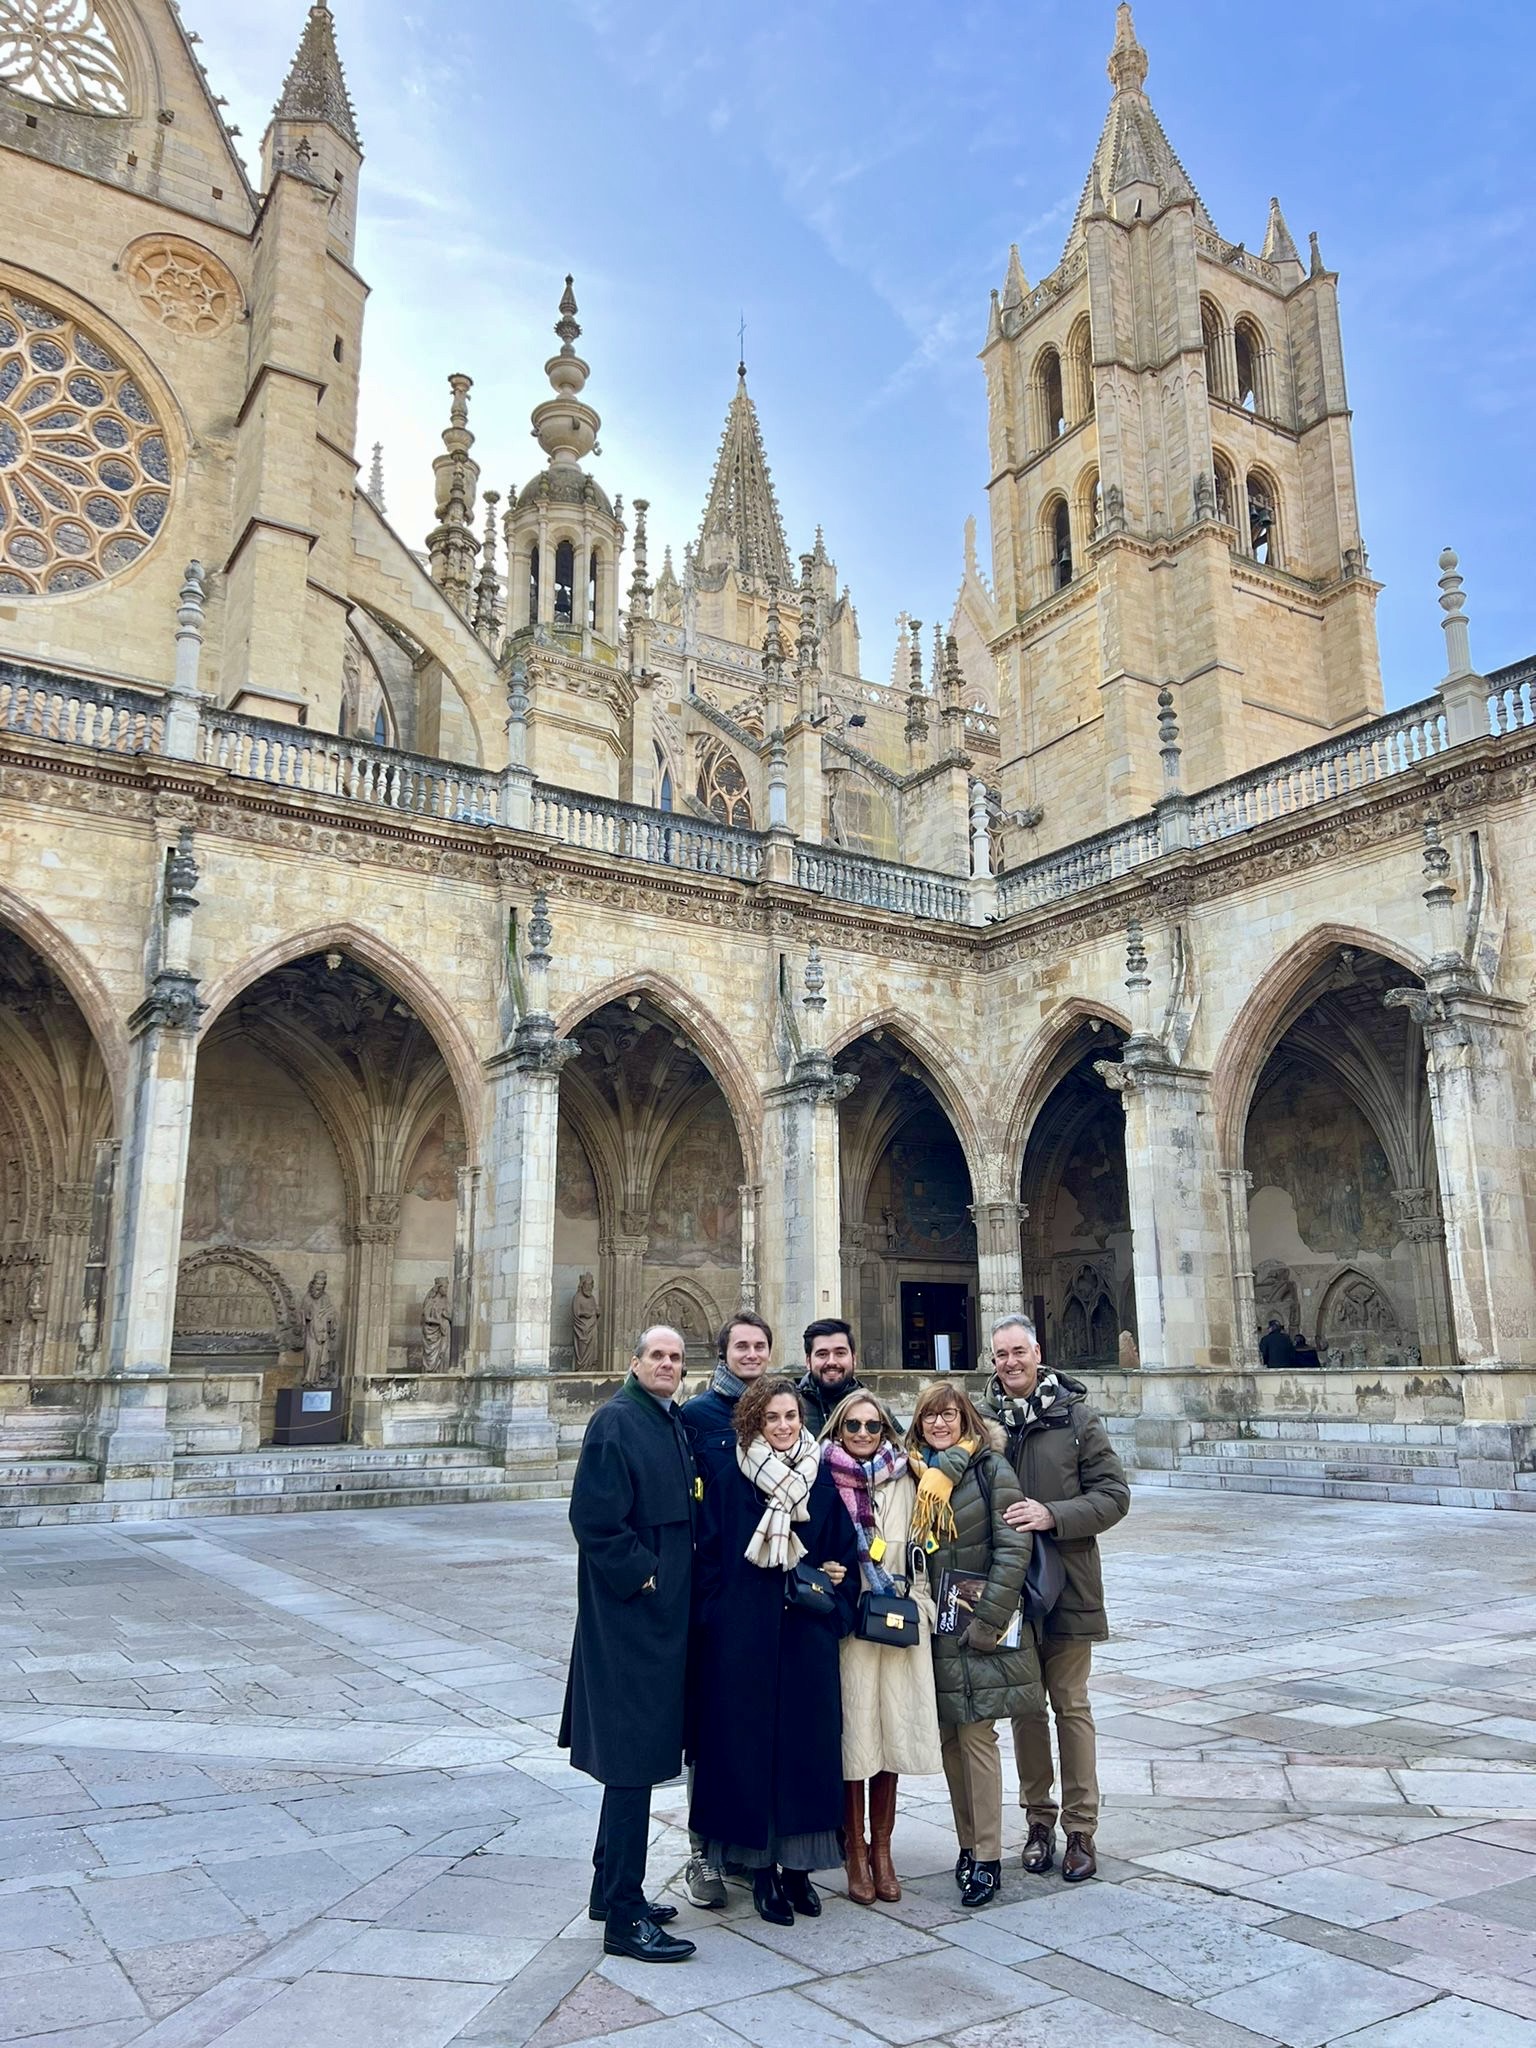 Visita guiada que combina lo más esencial de León, la Catedral de y su casco antiguo. Lugares que no debes perderte en tu estancia a nuestra hermosa ciudad.